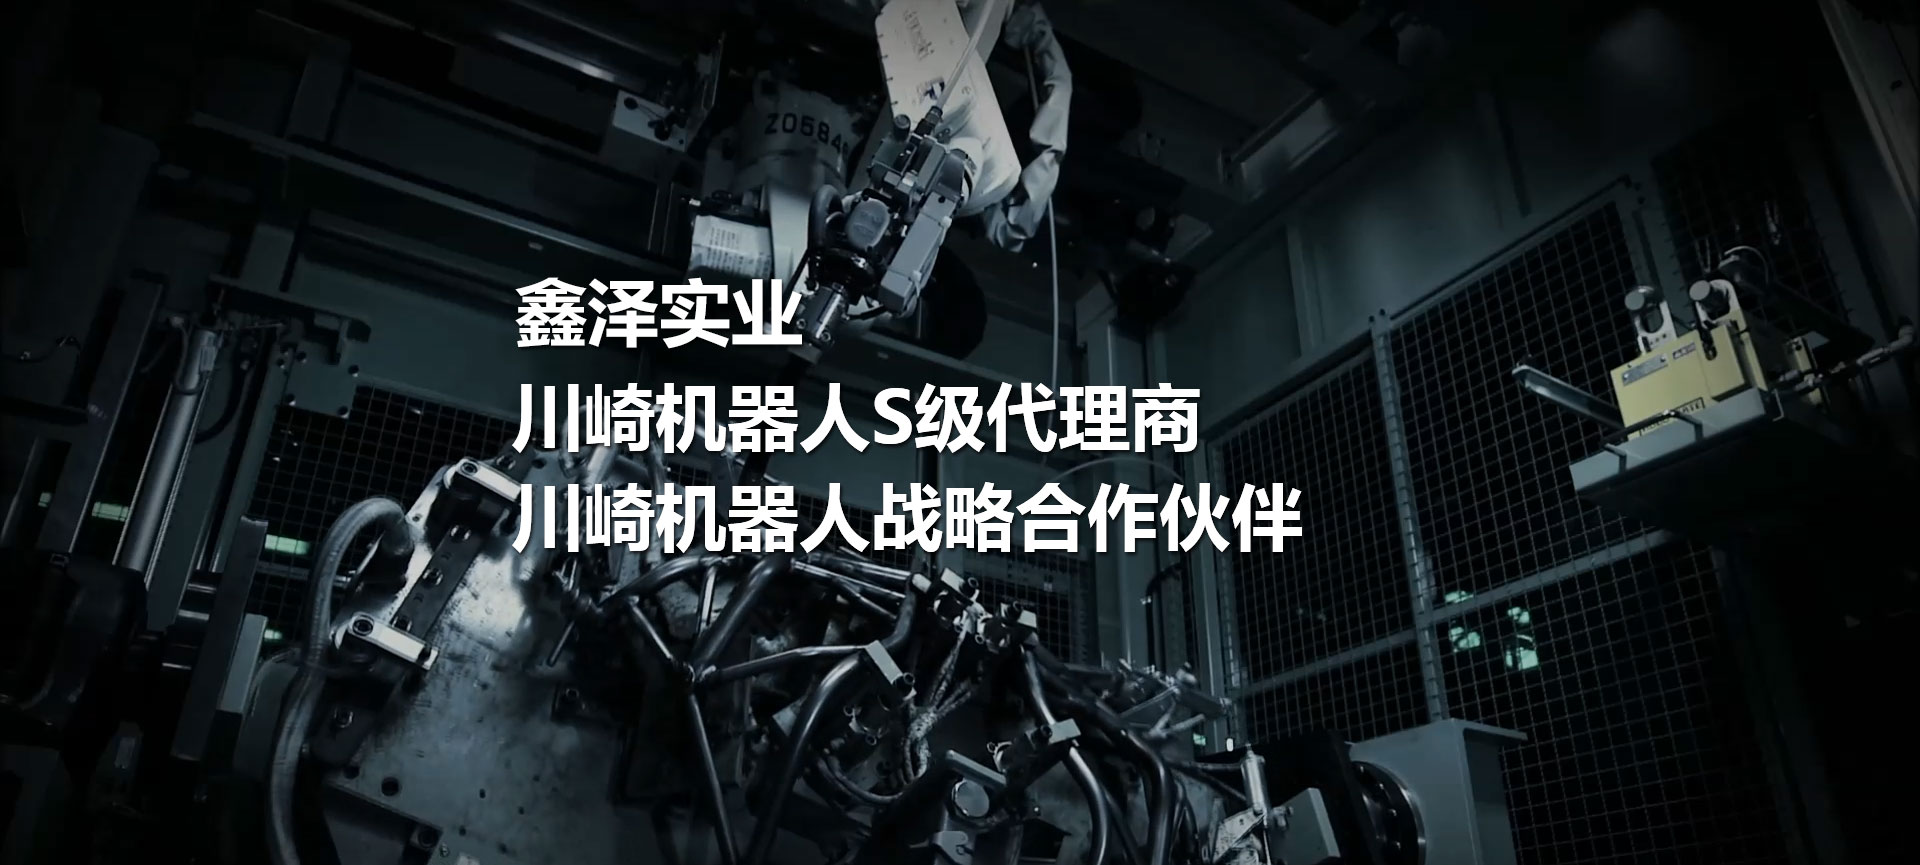 川崎机器人、喷涂机器人、焊接机器人、码垛机器人、工业机器人、搬运机器人